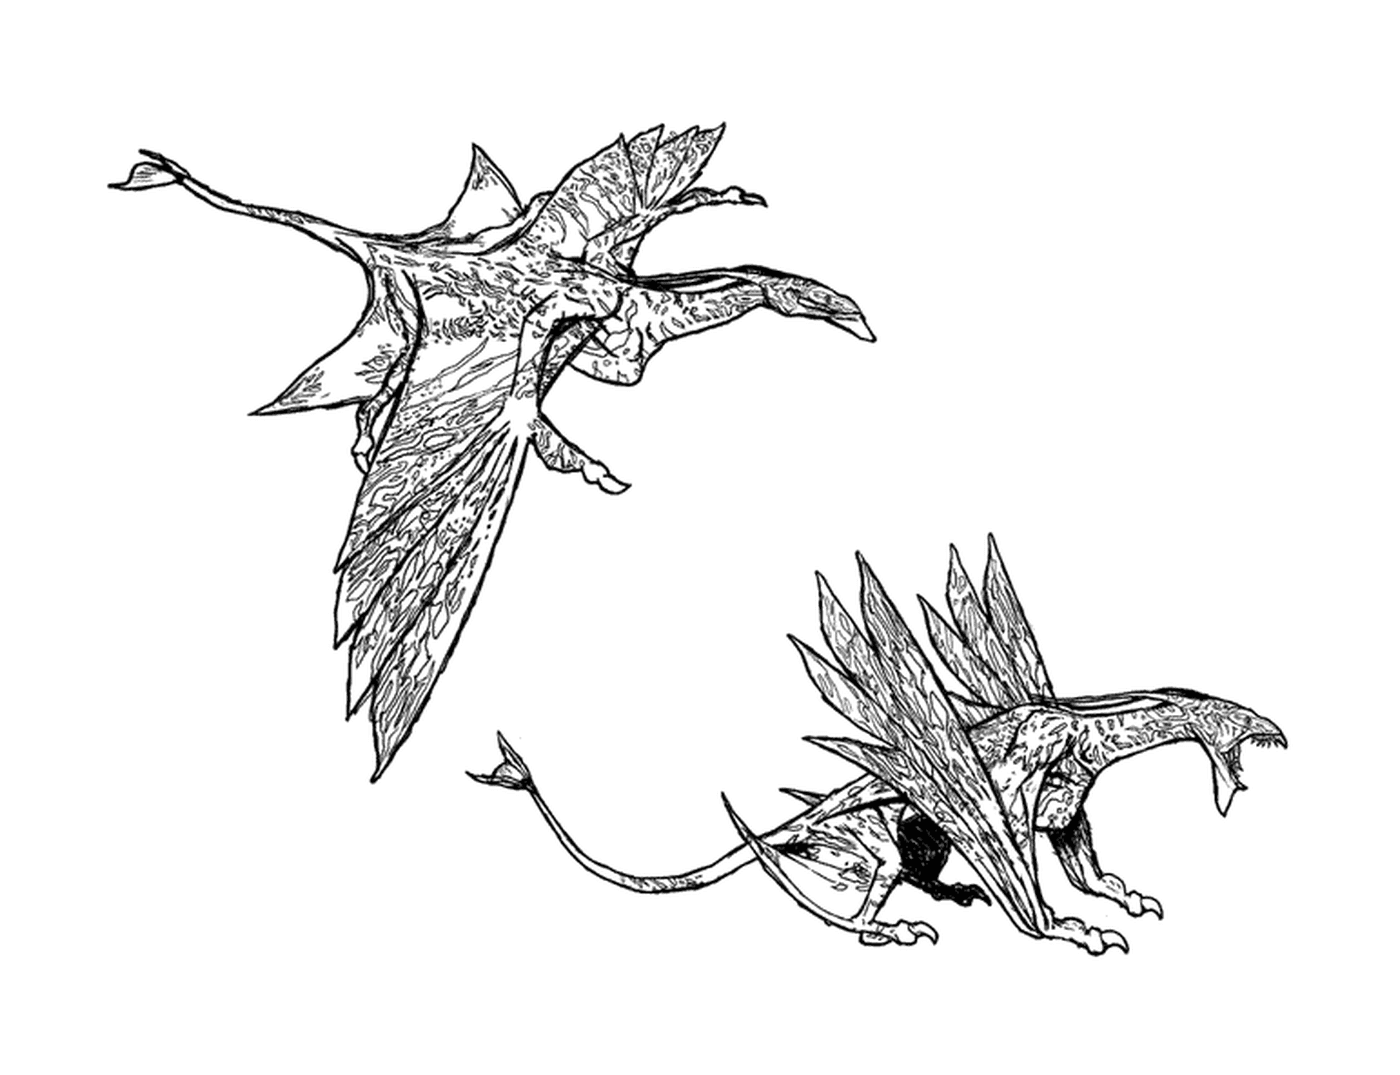   Deux dessins d'un dragon aux ailes déployées 